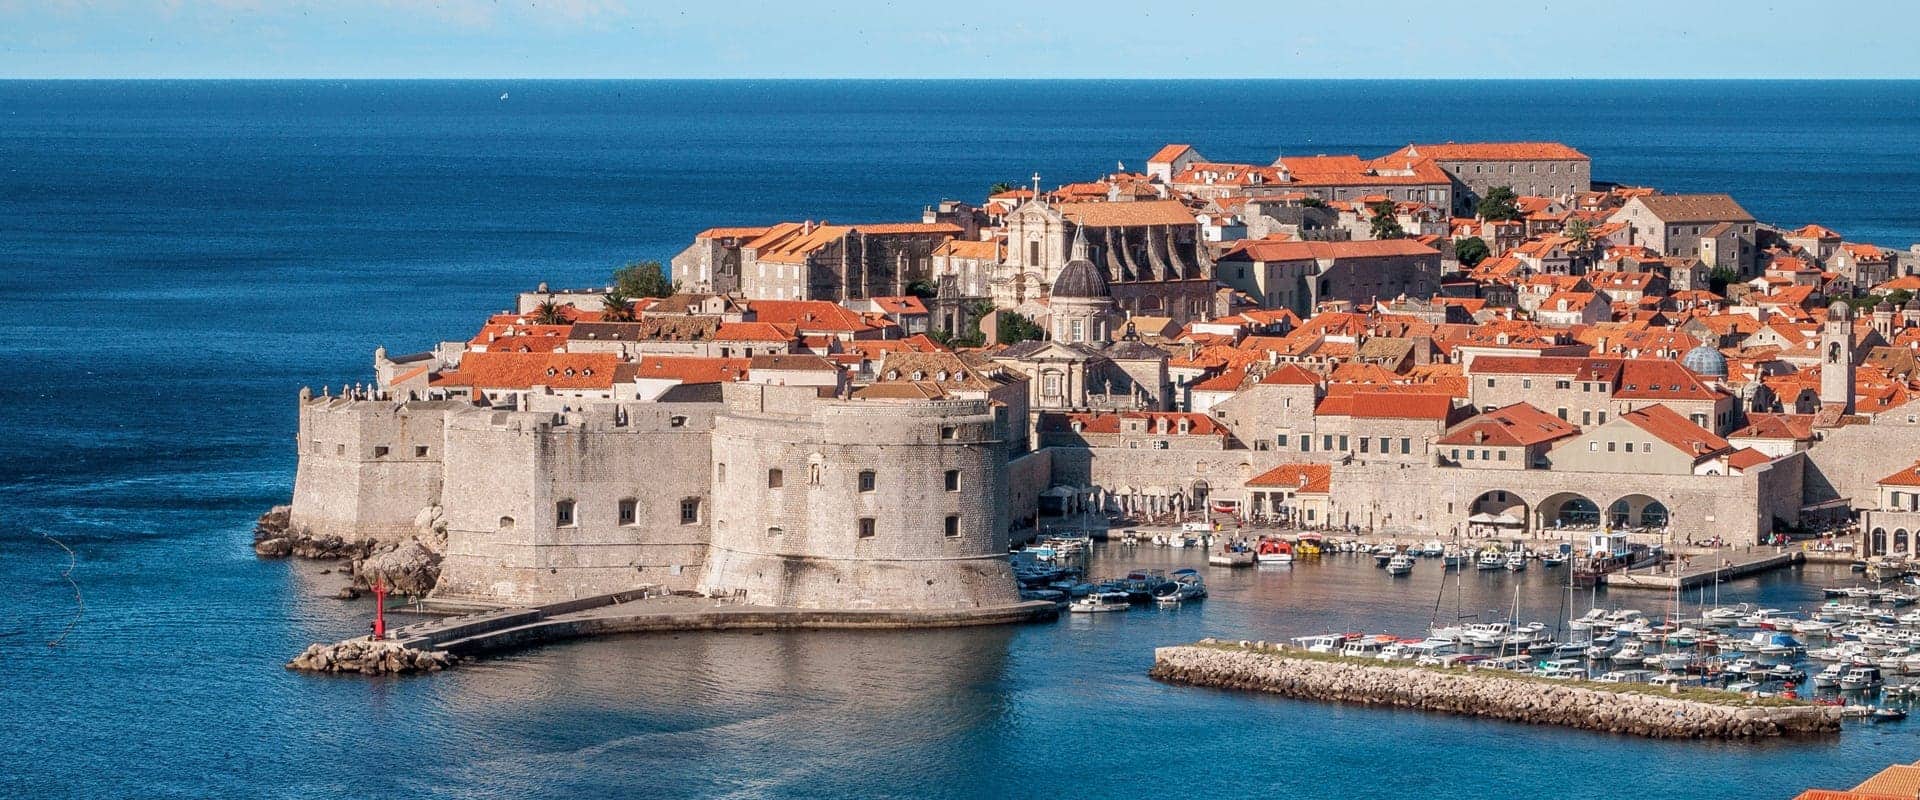 Dubrovnik Cruises